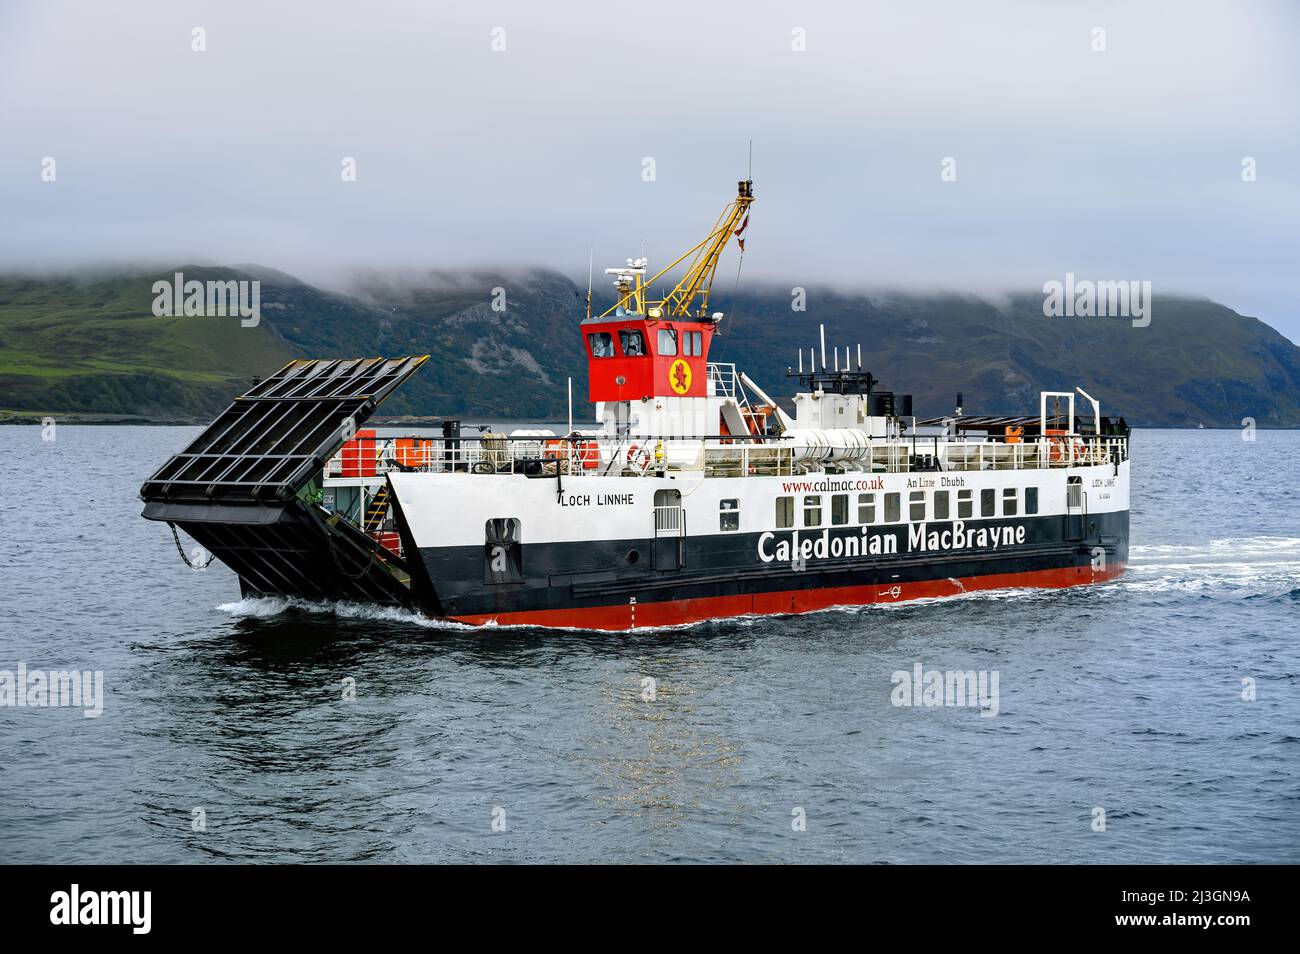 Loch Linnie est un ferry de secours exploité par Caledonian MacBrayne sur diverses routes interinsulaires et continentales en Écosse - octobre 2021. Banque D'Images